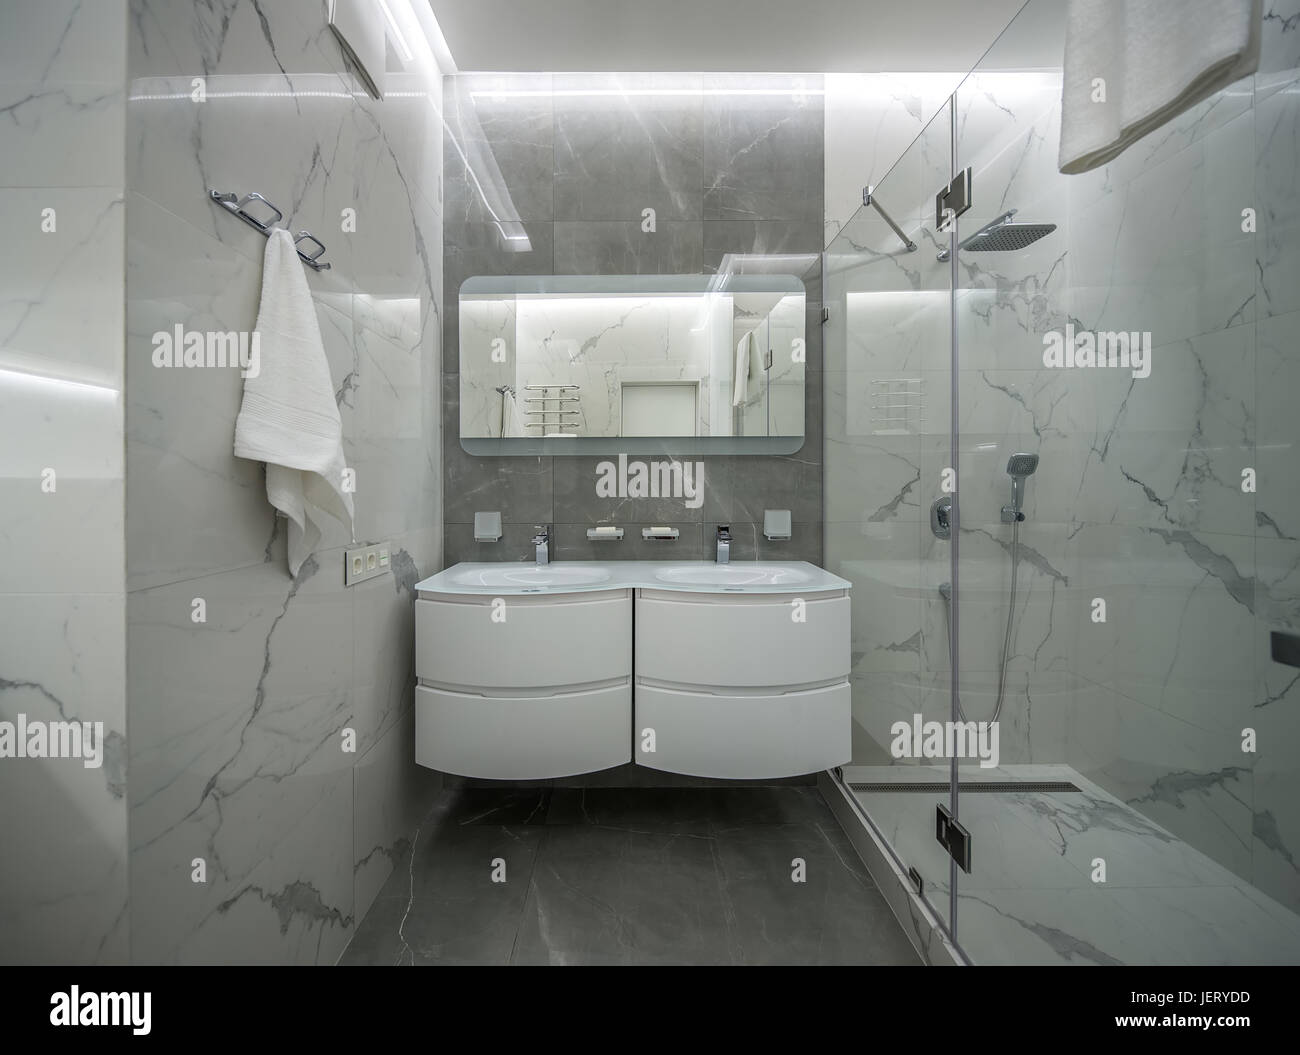 Modernes Bad mit Licht geflieste Wände. Es gibt eine Dusche mit Glastür, zwei weiße Waschbecken mit Armaturen, Spiegel über Ihnen, leuchtenden Lampen, Aufhänger wi Stockfoto